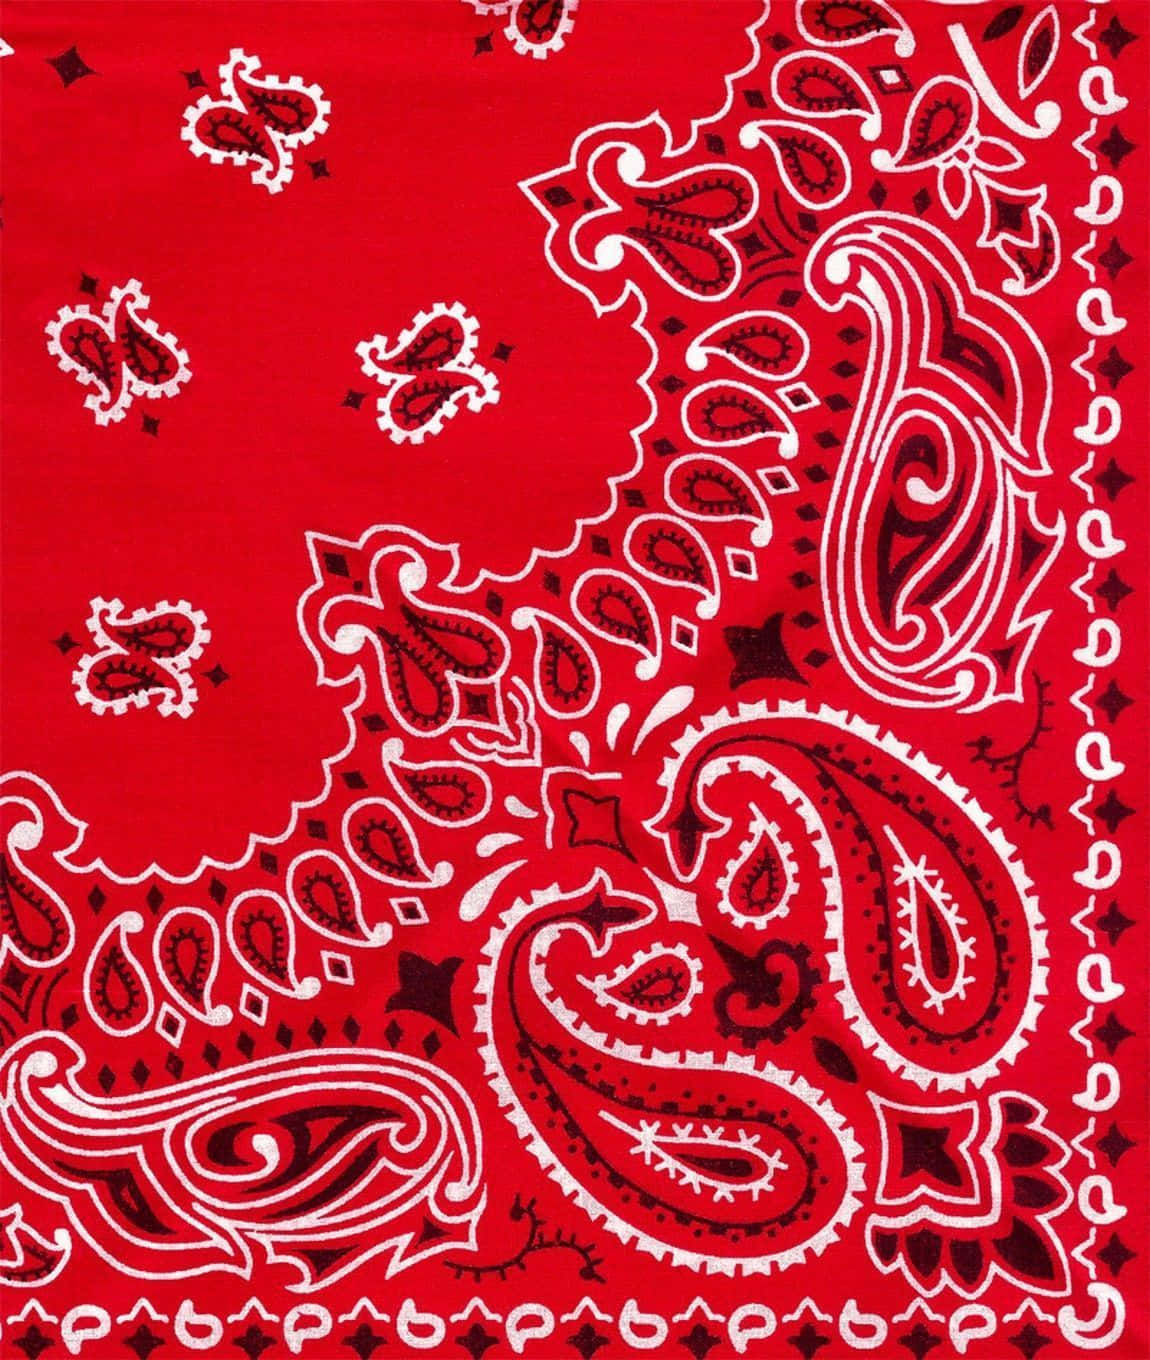 A stylish red bandana background with paisley pattern